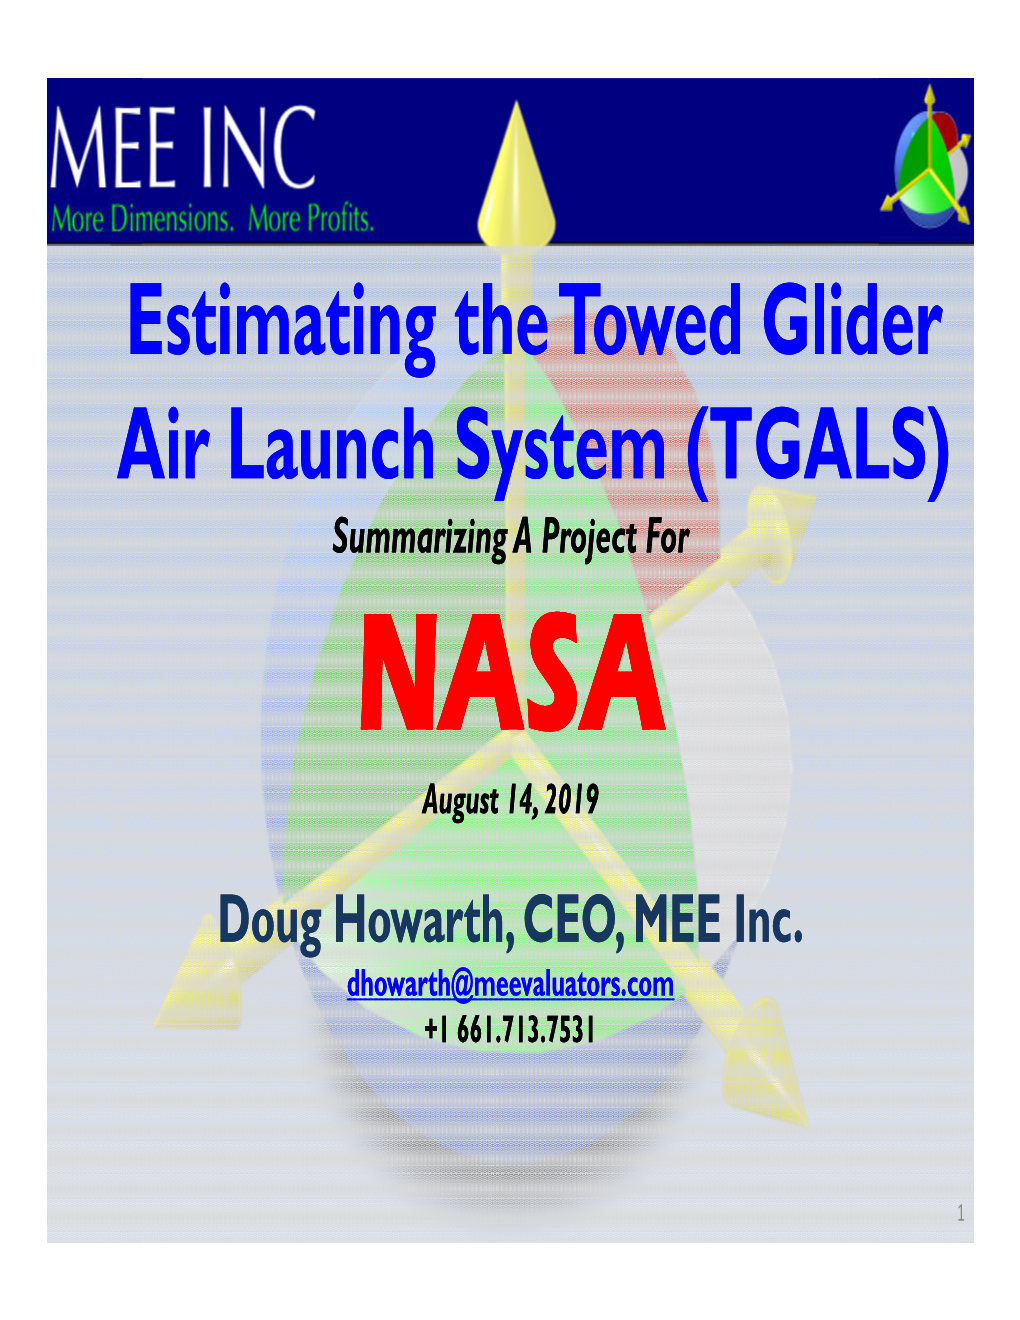 Estimating the Towed Glider Air Launch System (TGALS) Summarizing a Project for NNNAAASASASSSSSSAAAAAA